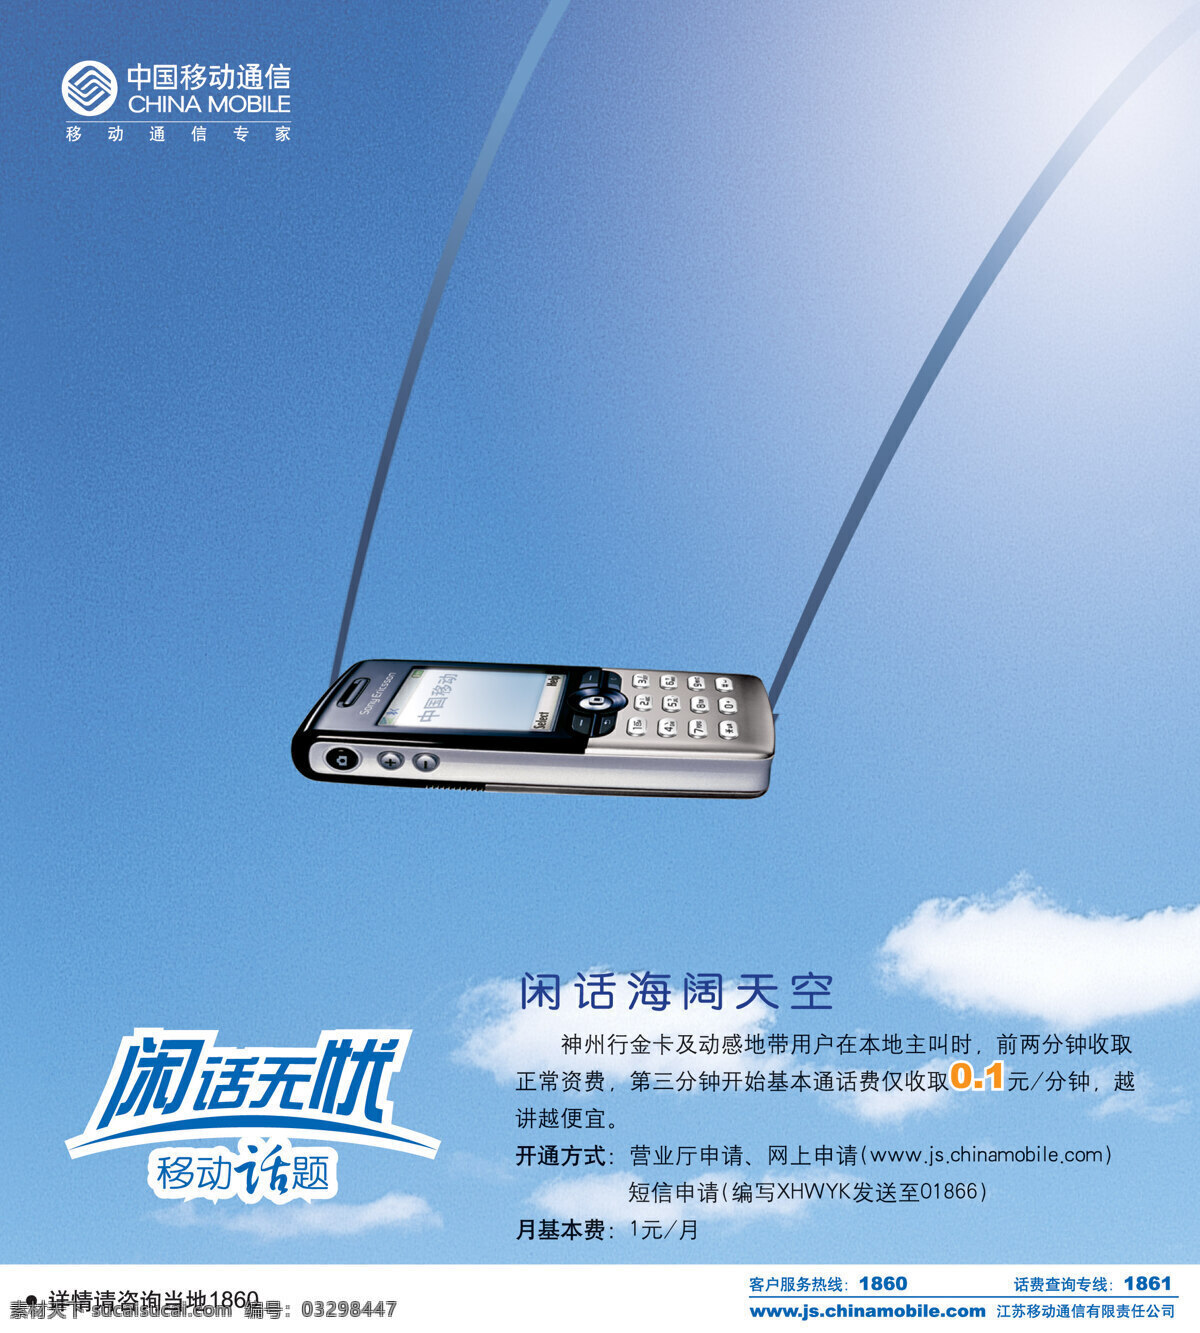 中国移动 通讯 平面创意 jpg0269 设计素材 信息通信 平面设计 蓝色